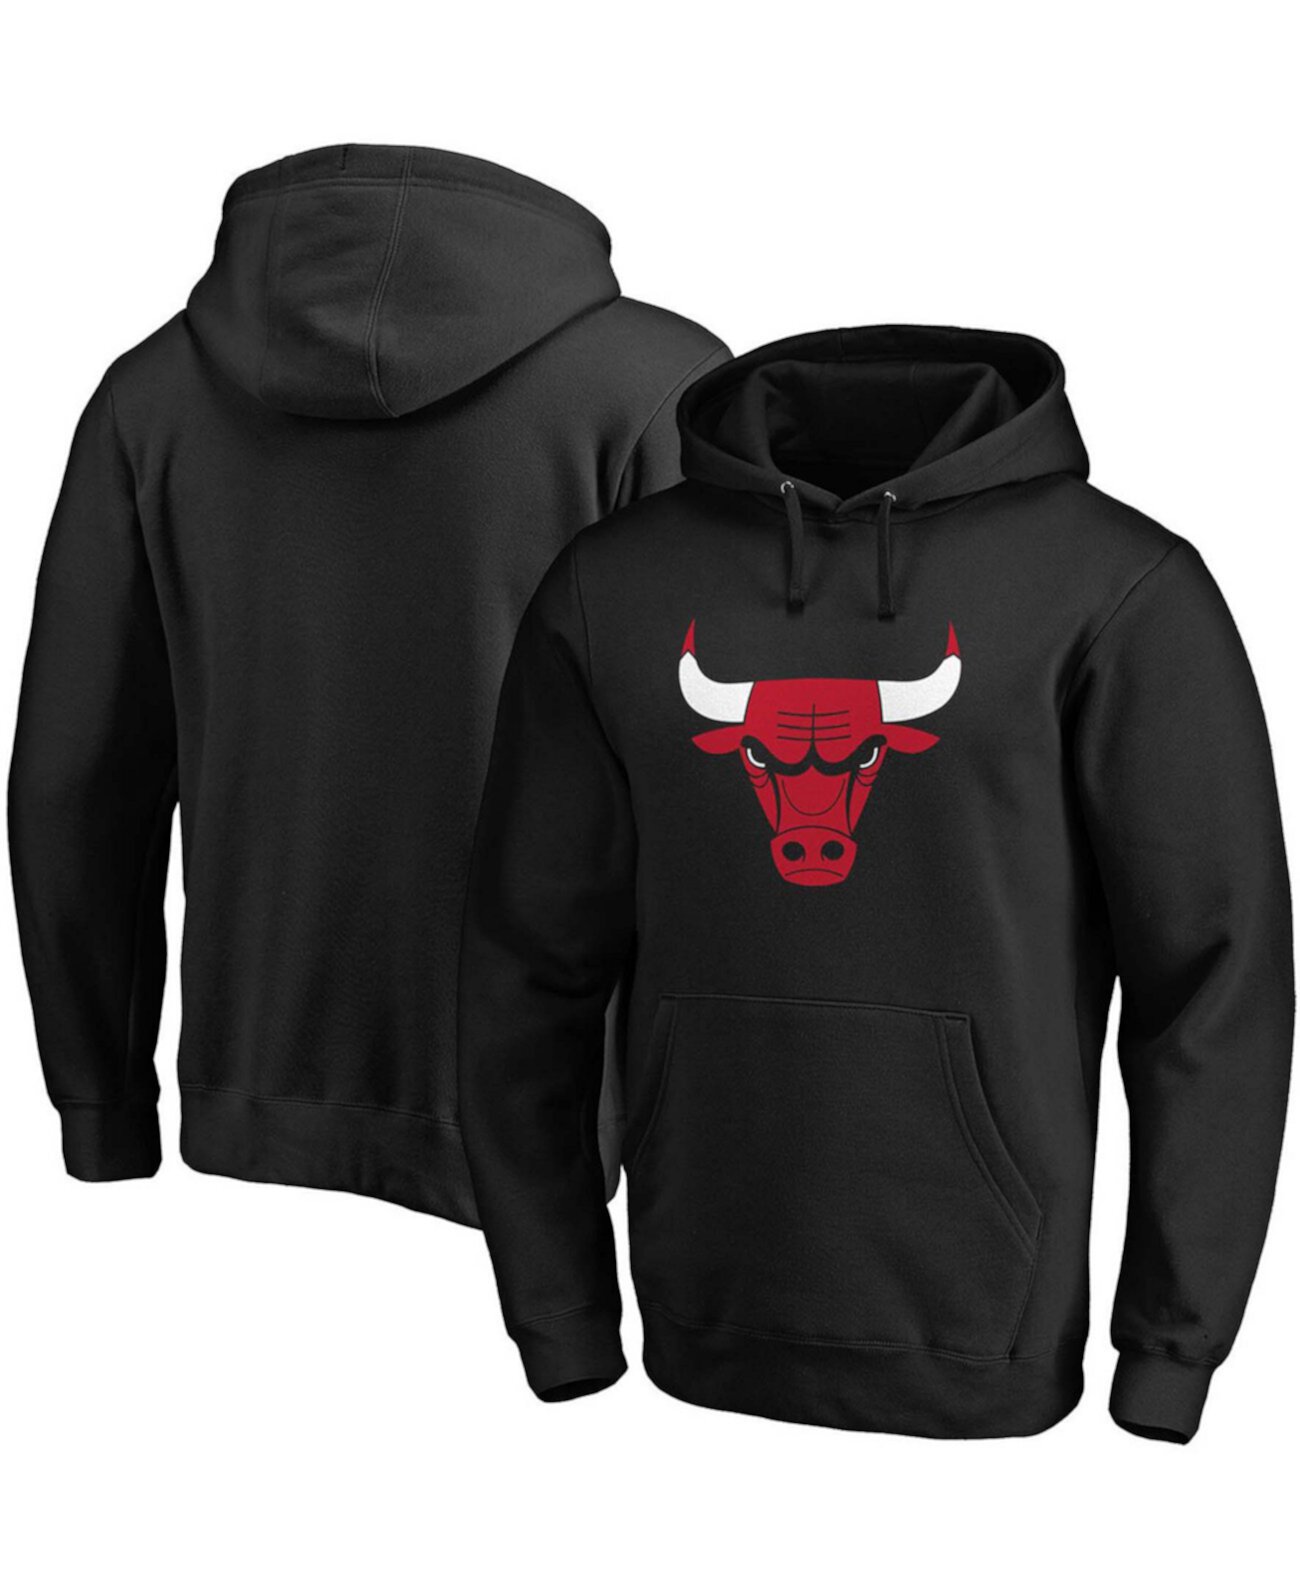 Мужская черная толстовка с капюшоном с логотипом Chicago Bulls Primary Team Majestic